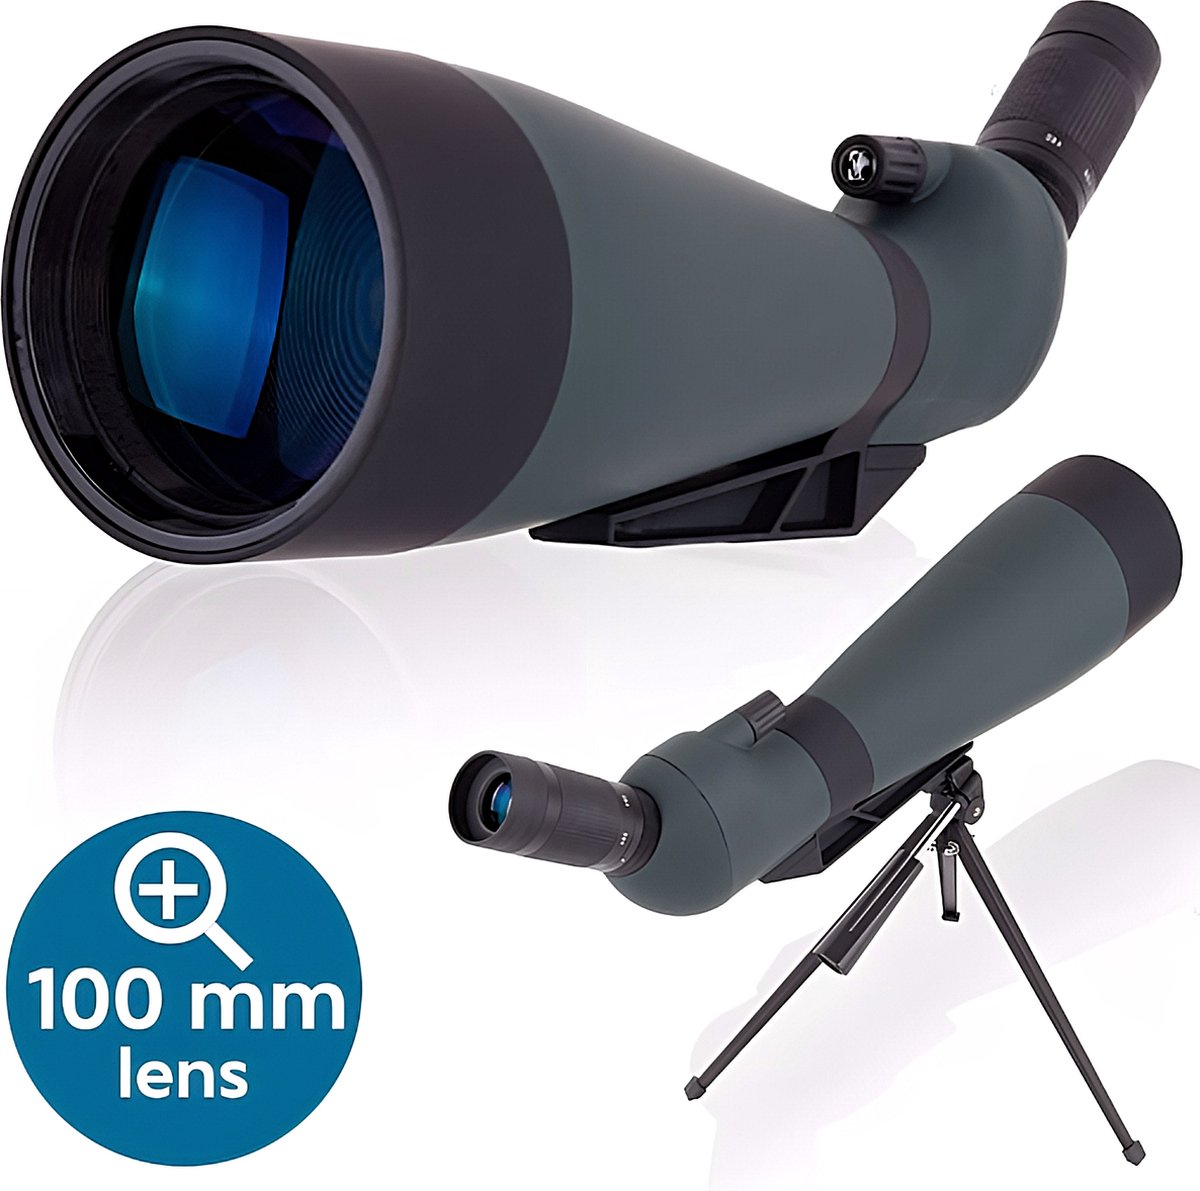 Zoomble® Spotting Scope PRO - 25x75 Zoom - 100 mm Lens - Inclusief Statief, Telefoonhouder & Draagtas - HD BaK-4 Lens - Vogelspotten, Jagen, Outdoor & Natuur - Stevige Behuizing - Monokijker - Monoculair Verrekijker